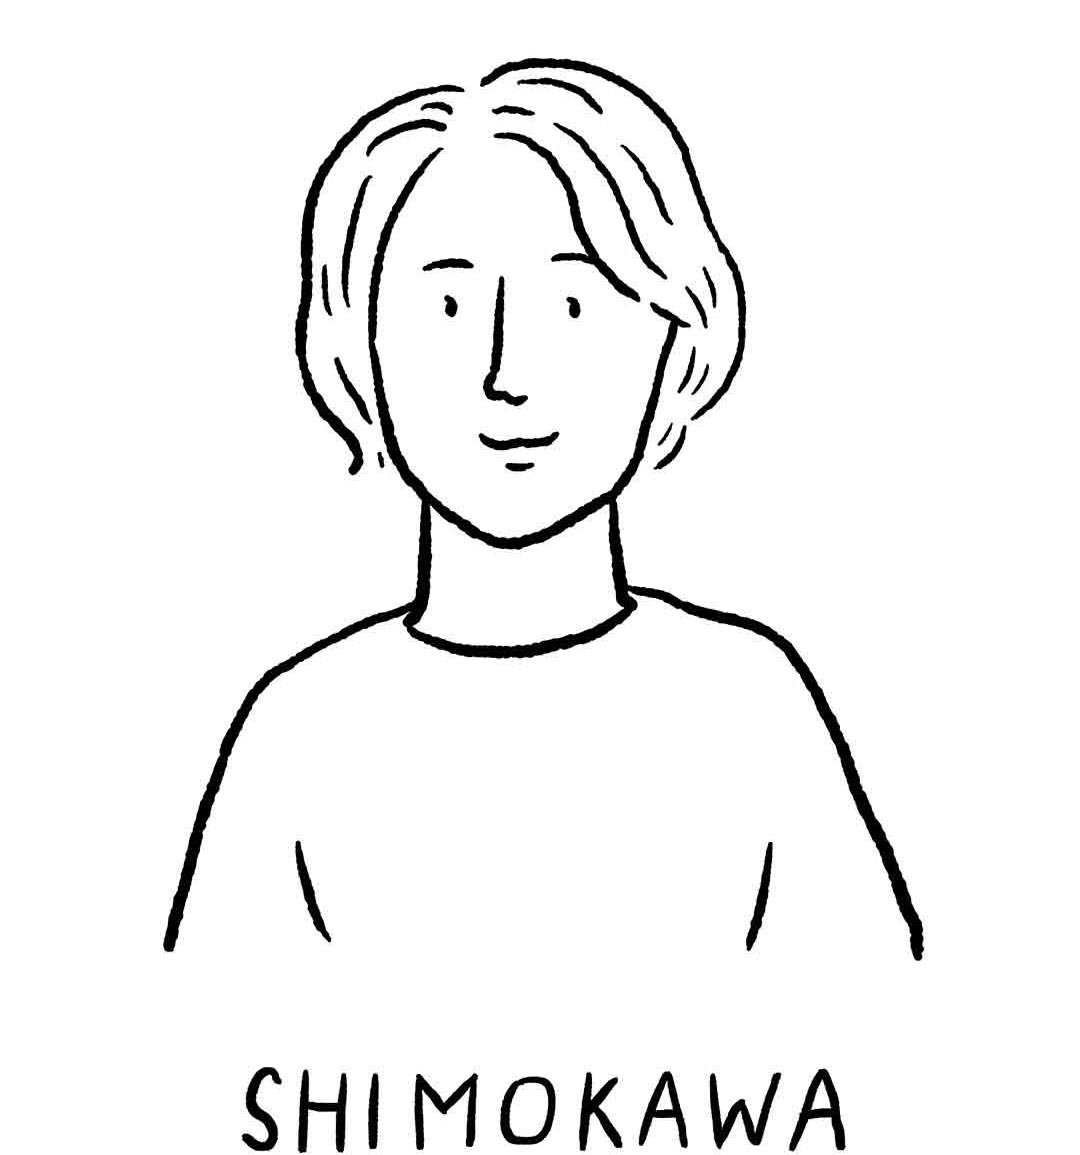 SHIMOKAWA